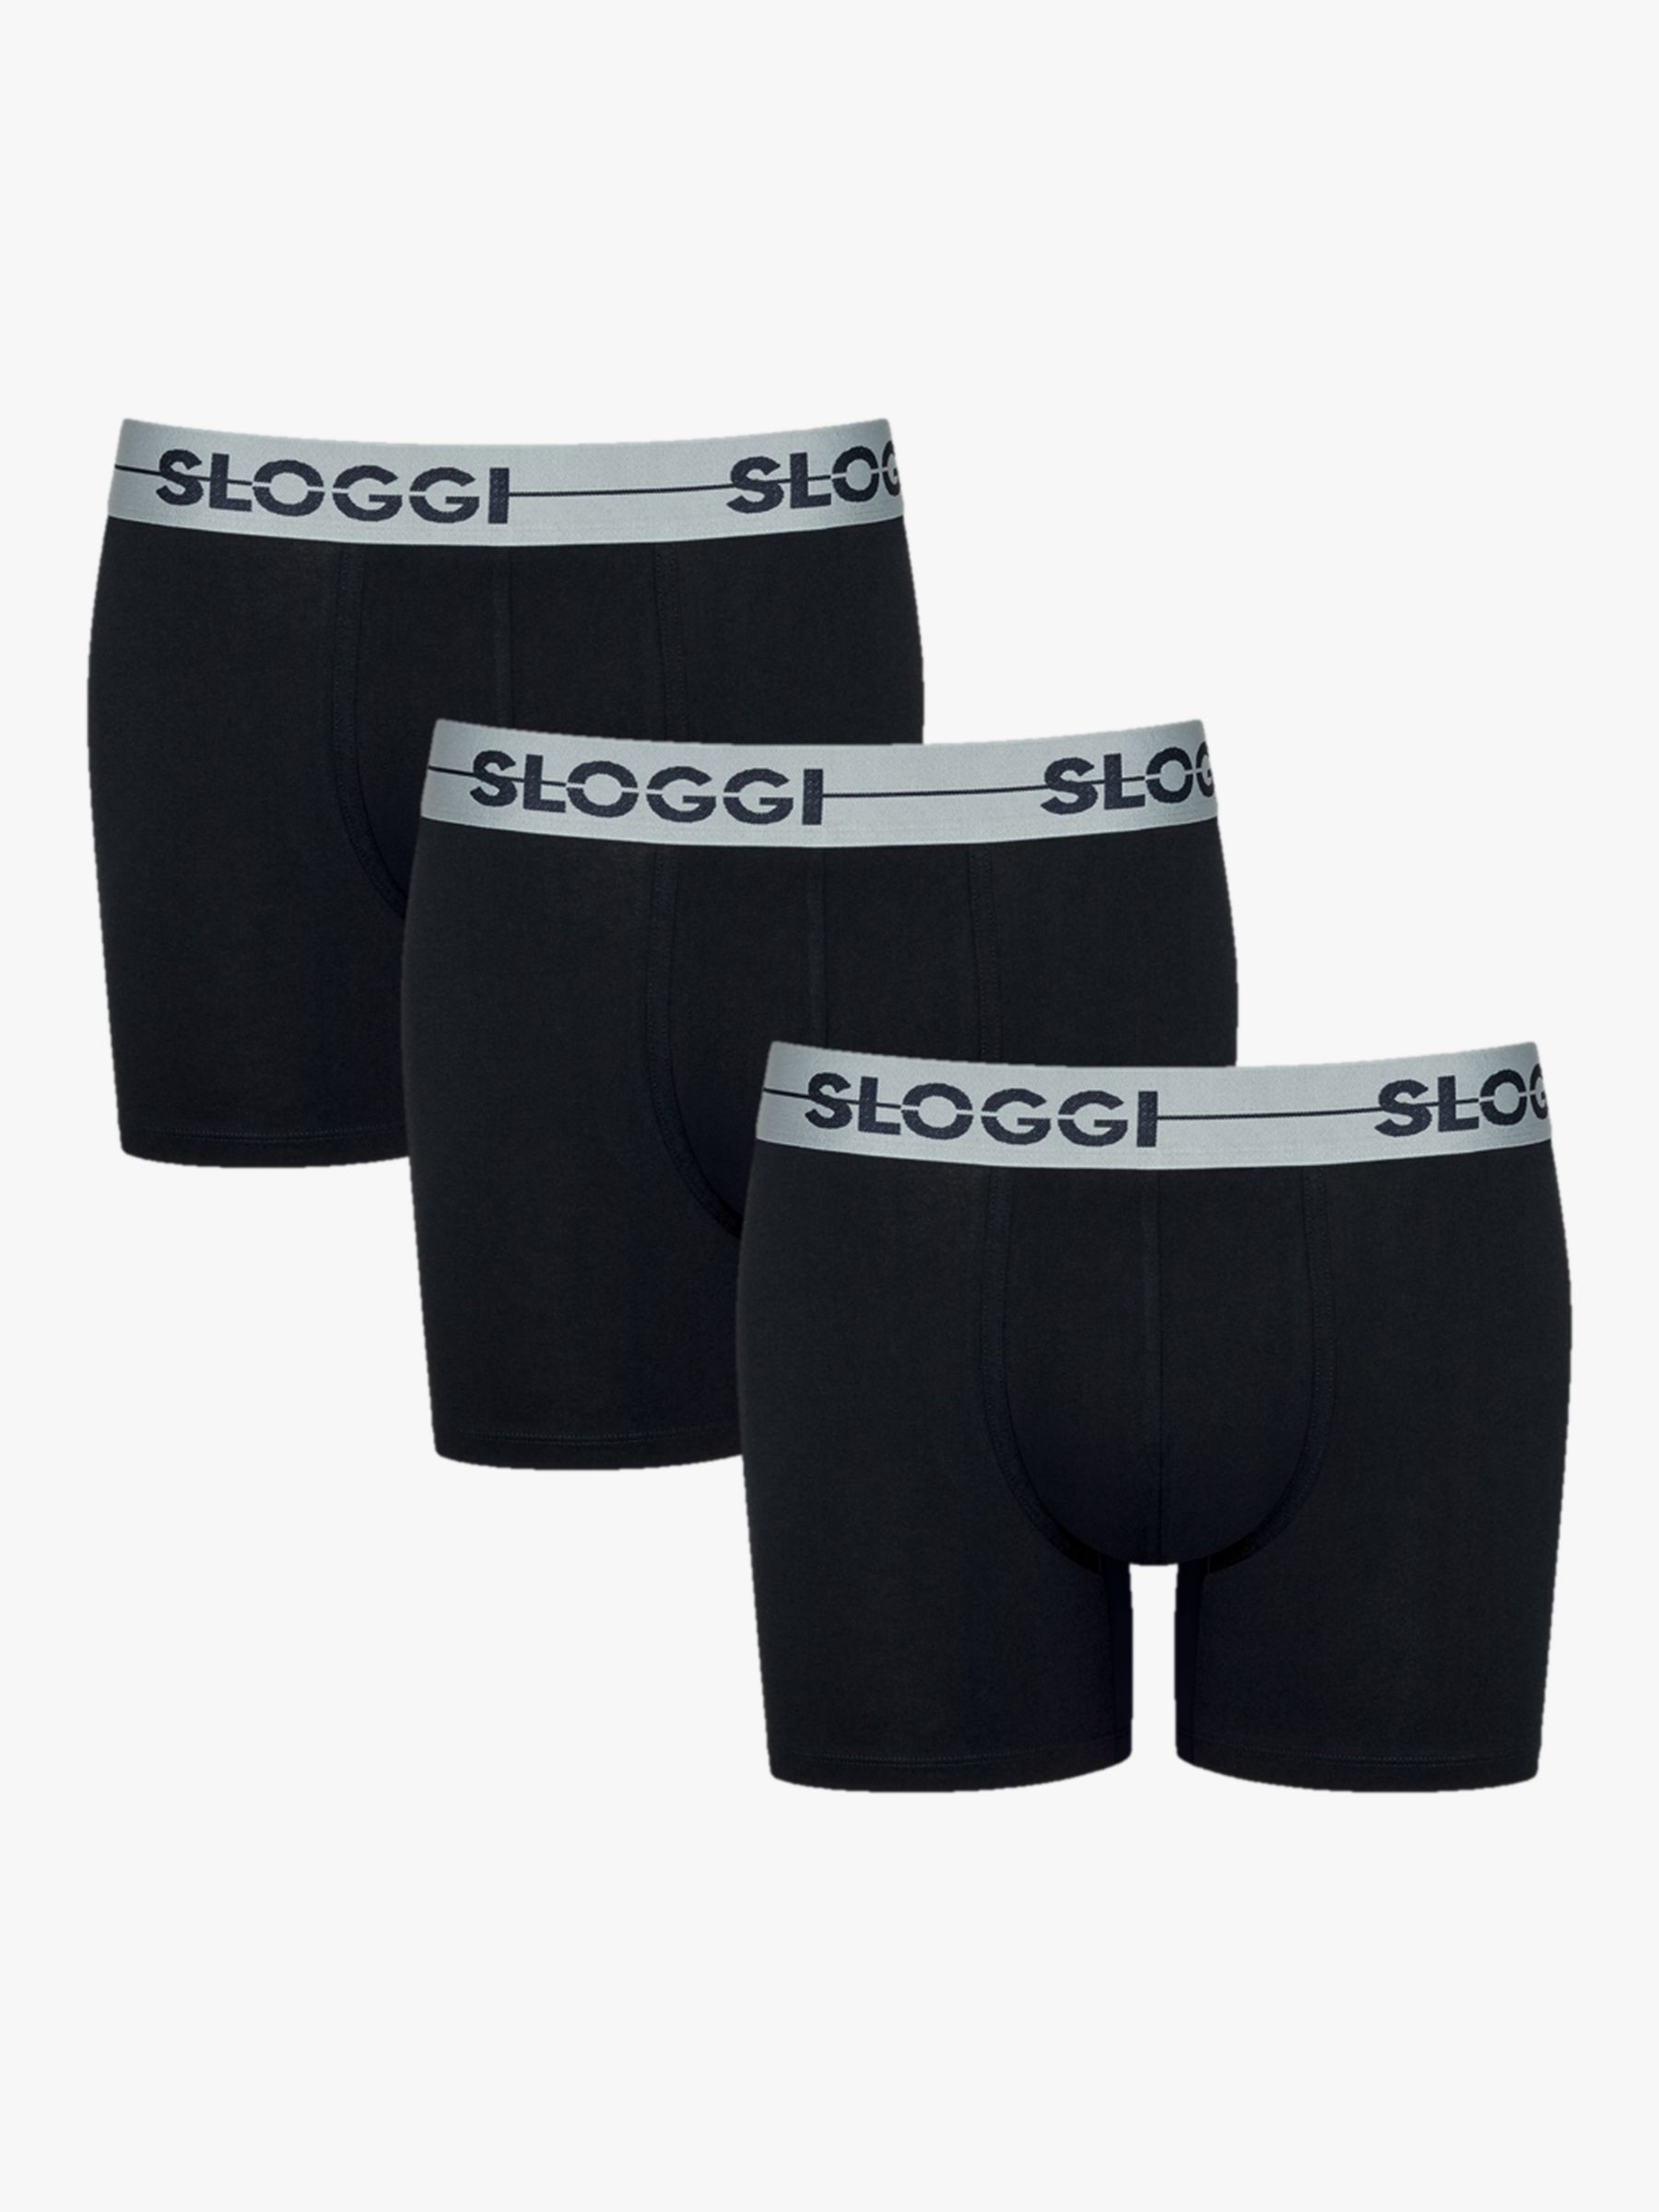 Sloggi Sloggi Men's GO Boxer Shorts, Pack of 2